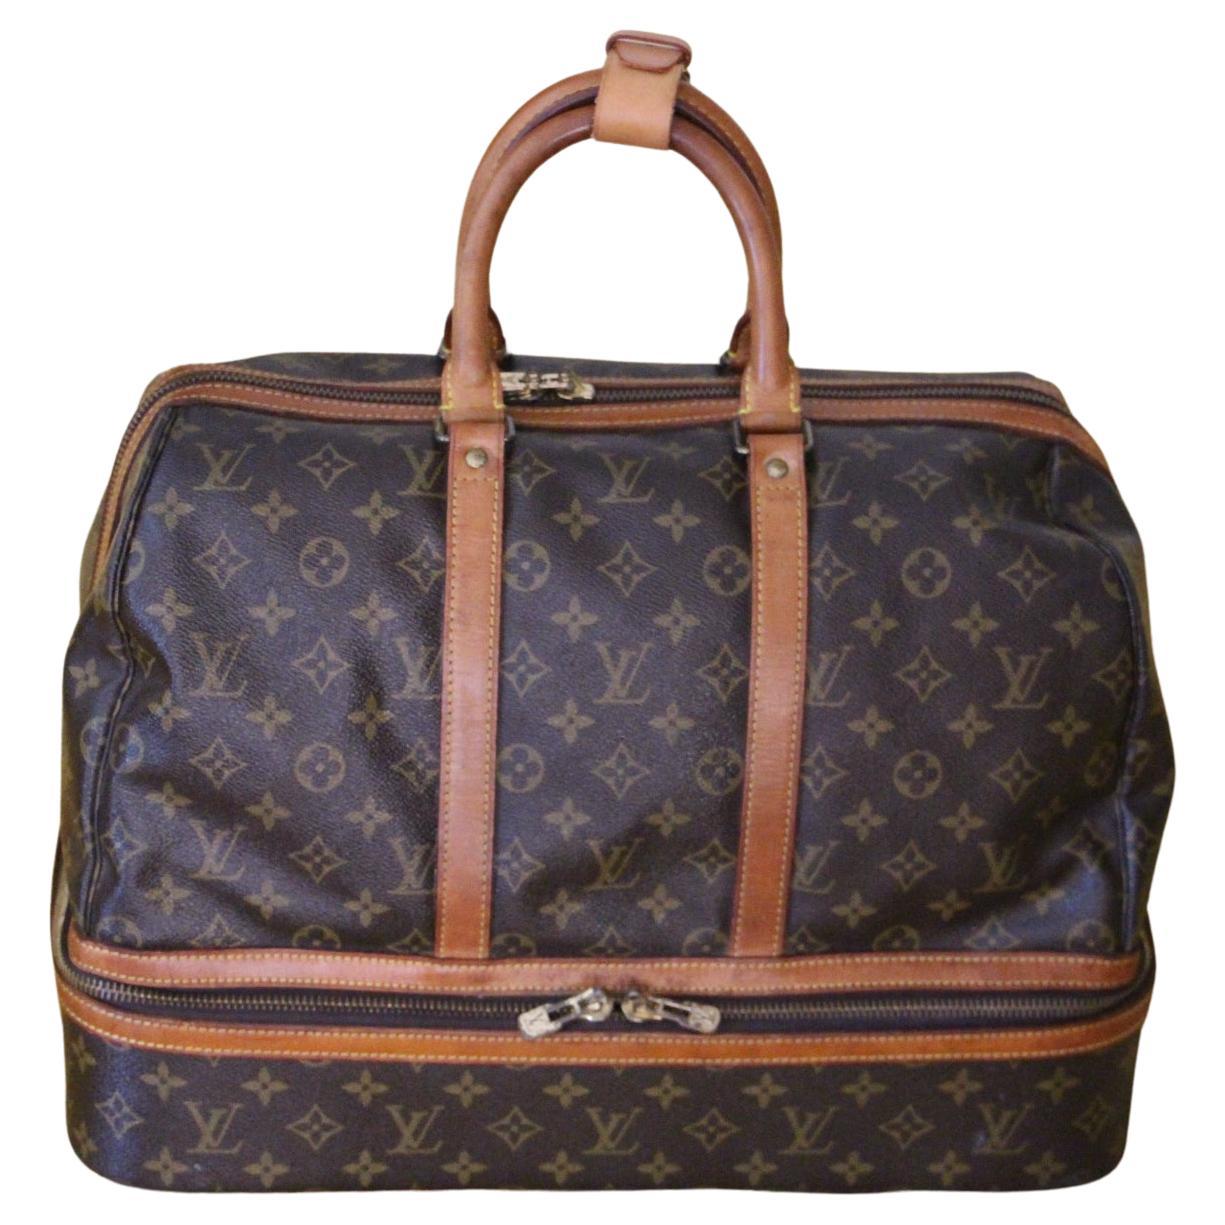 Large Louis Vuitton Bag, Large Louis Vuitton Duffle Bag, Louis